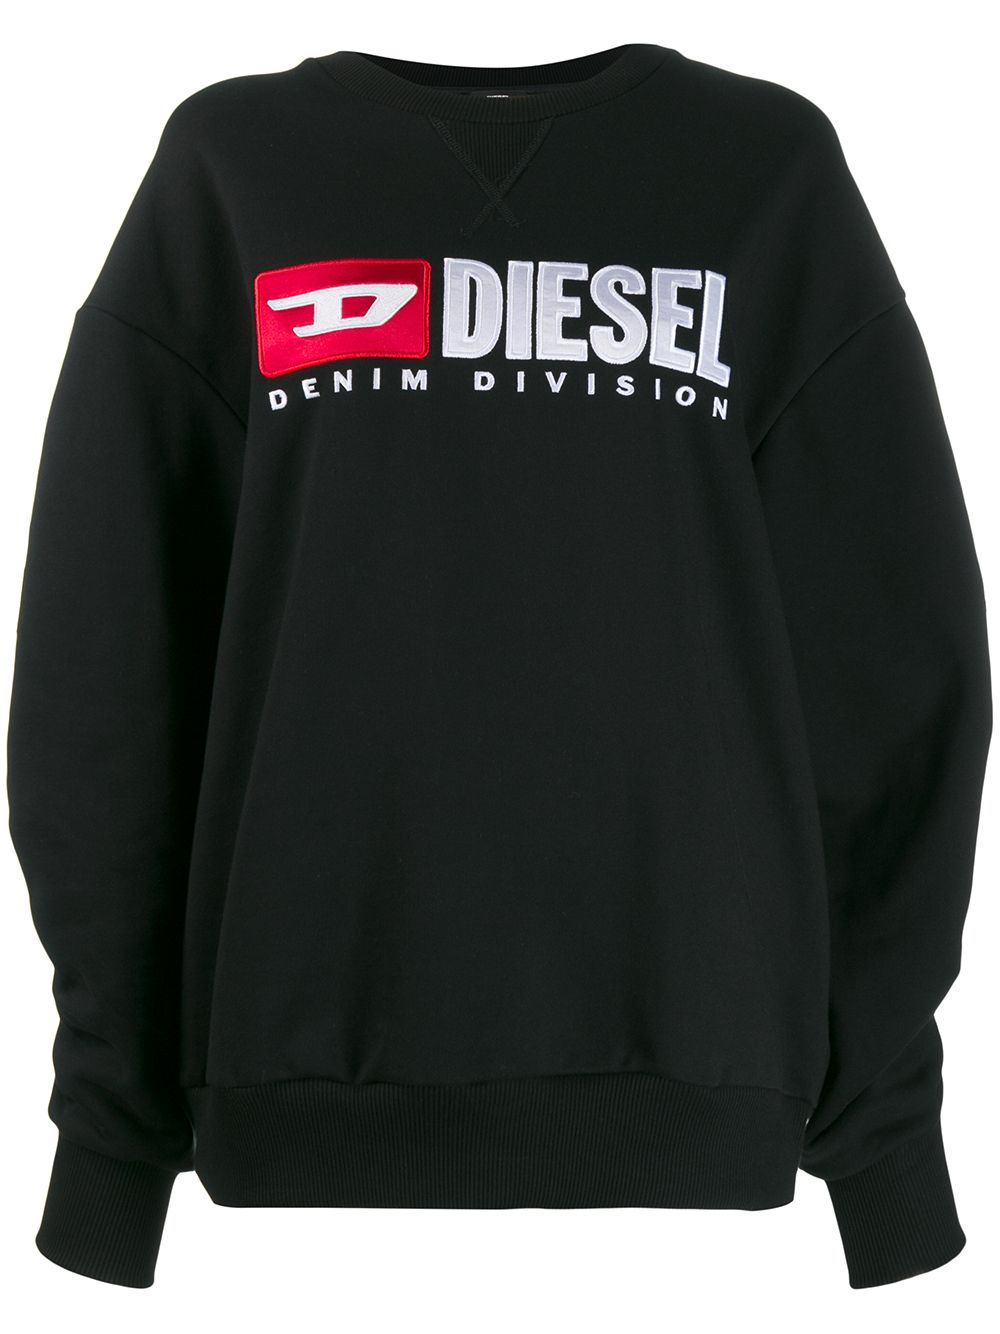 фото Diesel толстовка с контрастным логотипом